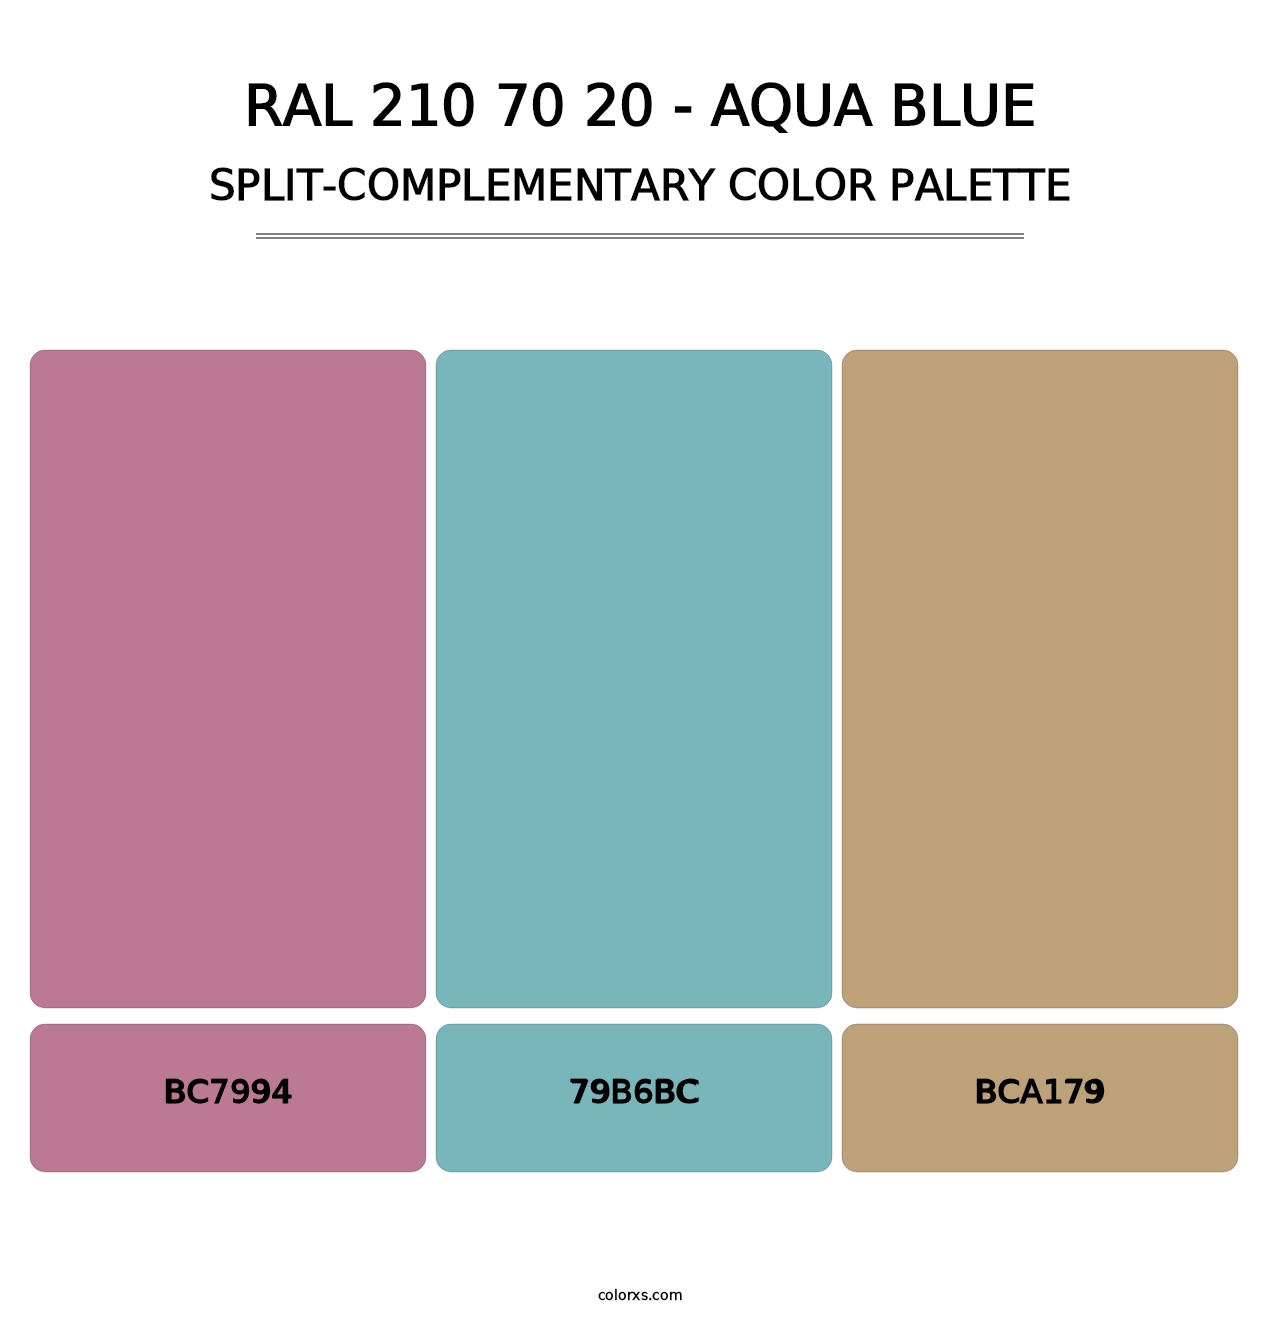 RAL 210 70 20 - Aqua Blue - Split-Complementary Color Palette